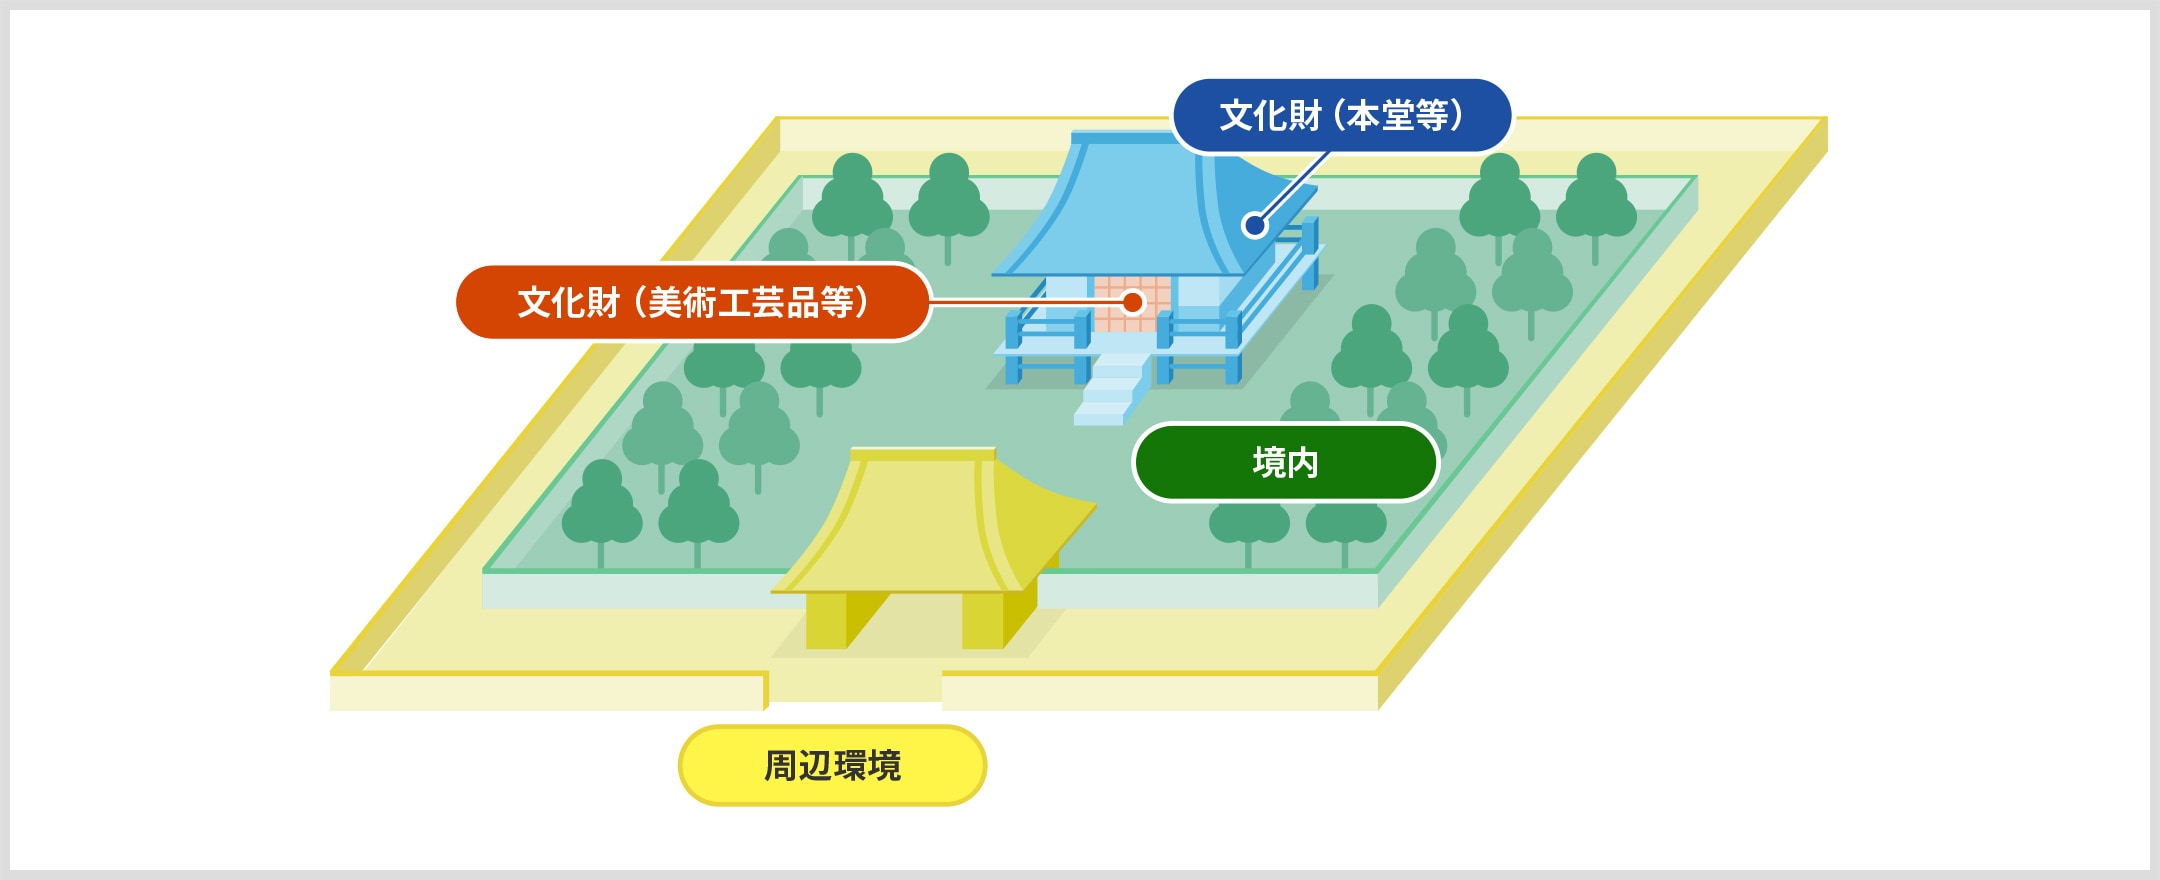 イラスト: 神社仏閣を、「周辺環境」「境内」「文化財（本堂等）」「文化財（美術工芸品等）」の4つのゾーンに区分している例。